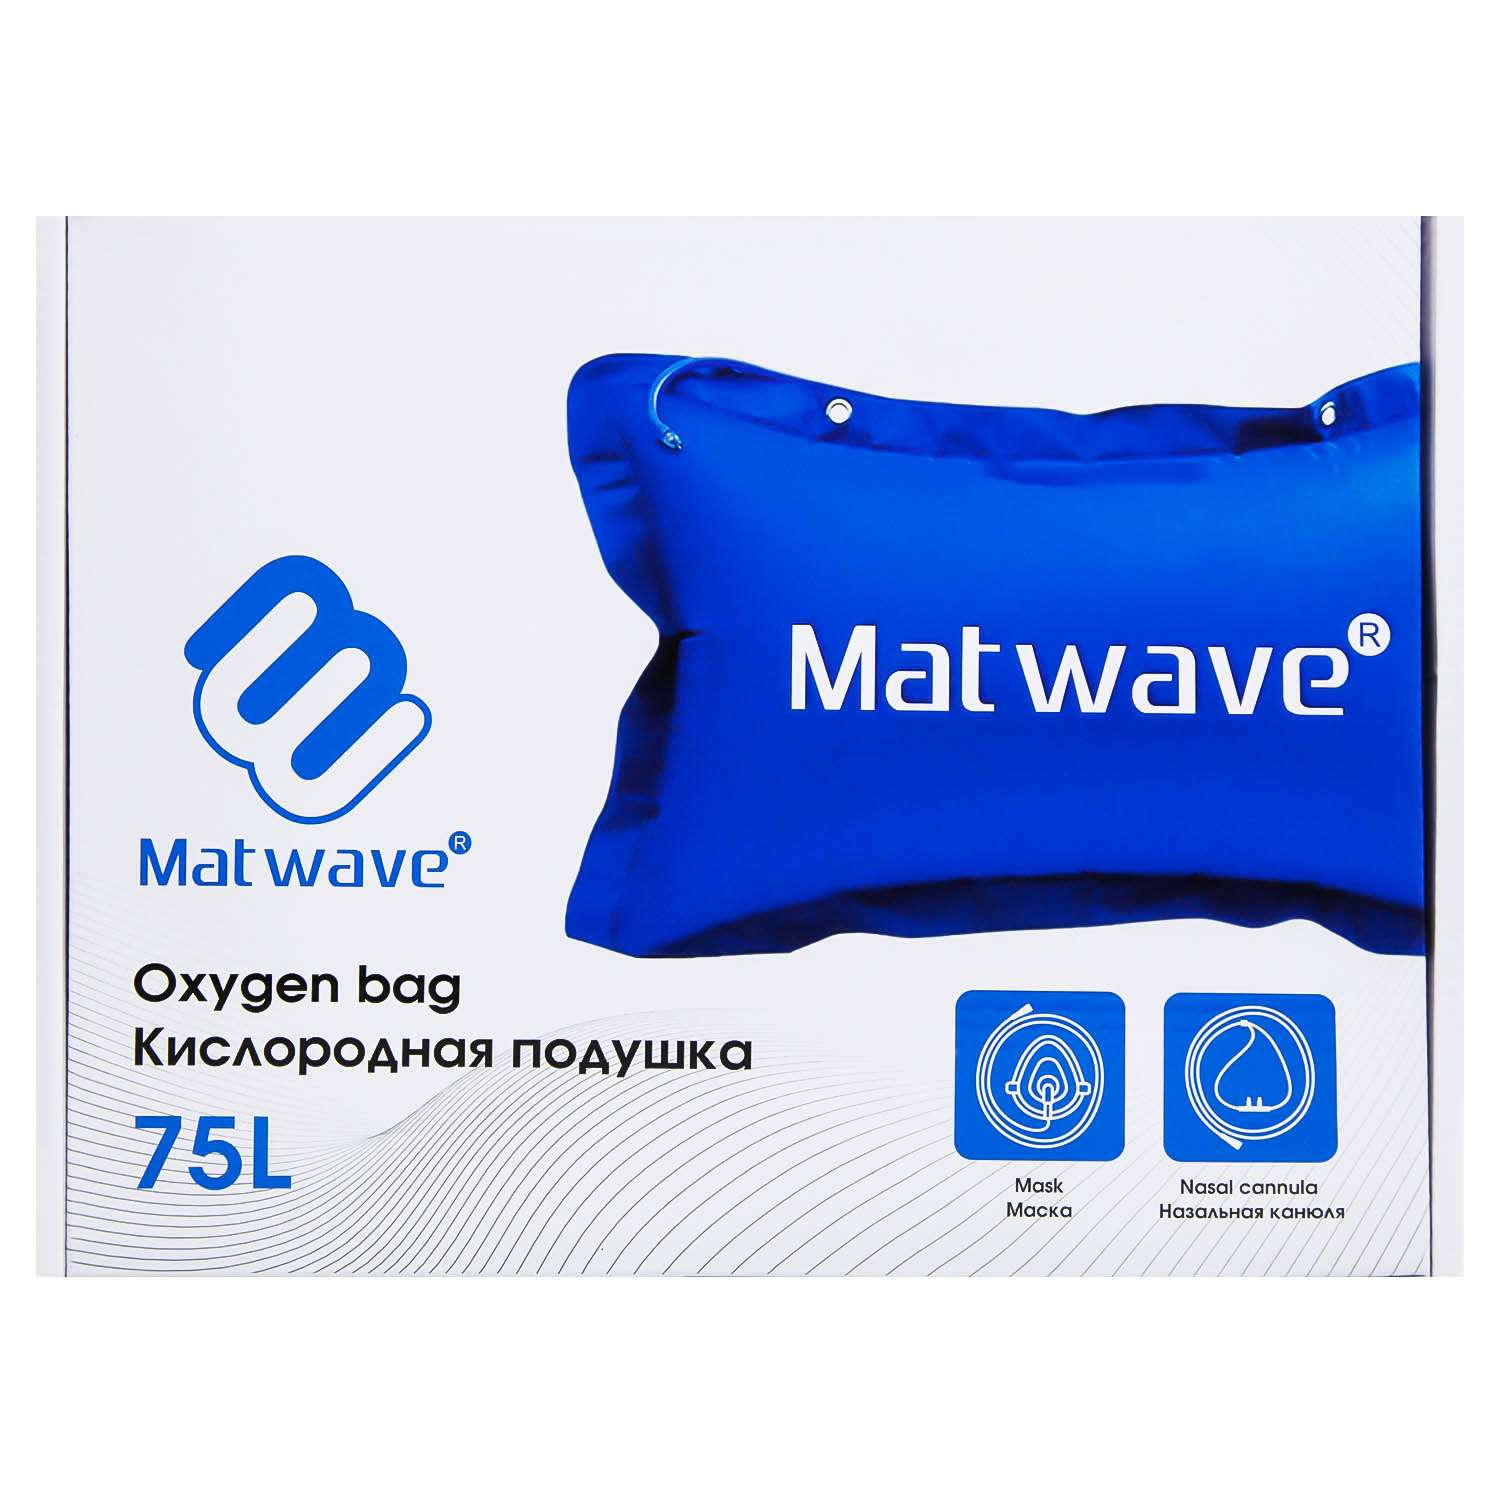 Кислородная подушка Matwave 75L + 2 маски + назальная канюля - фото 11